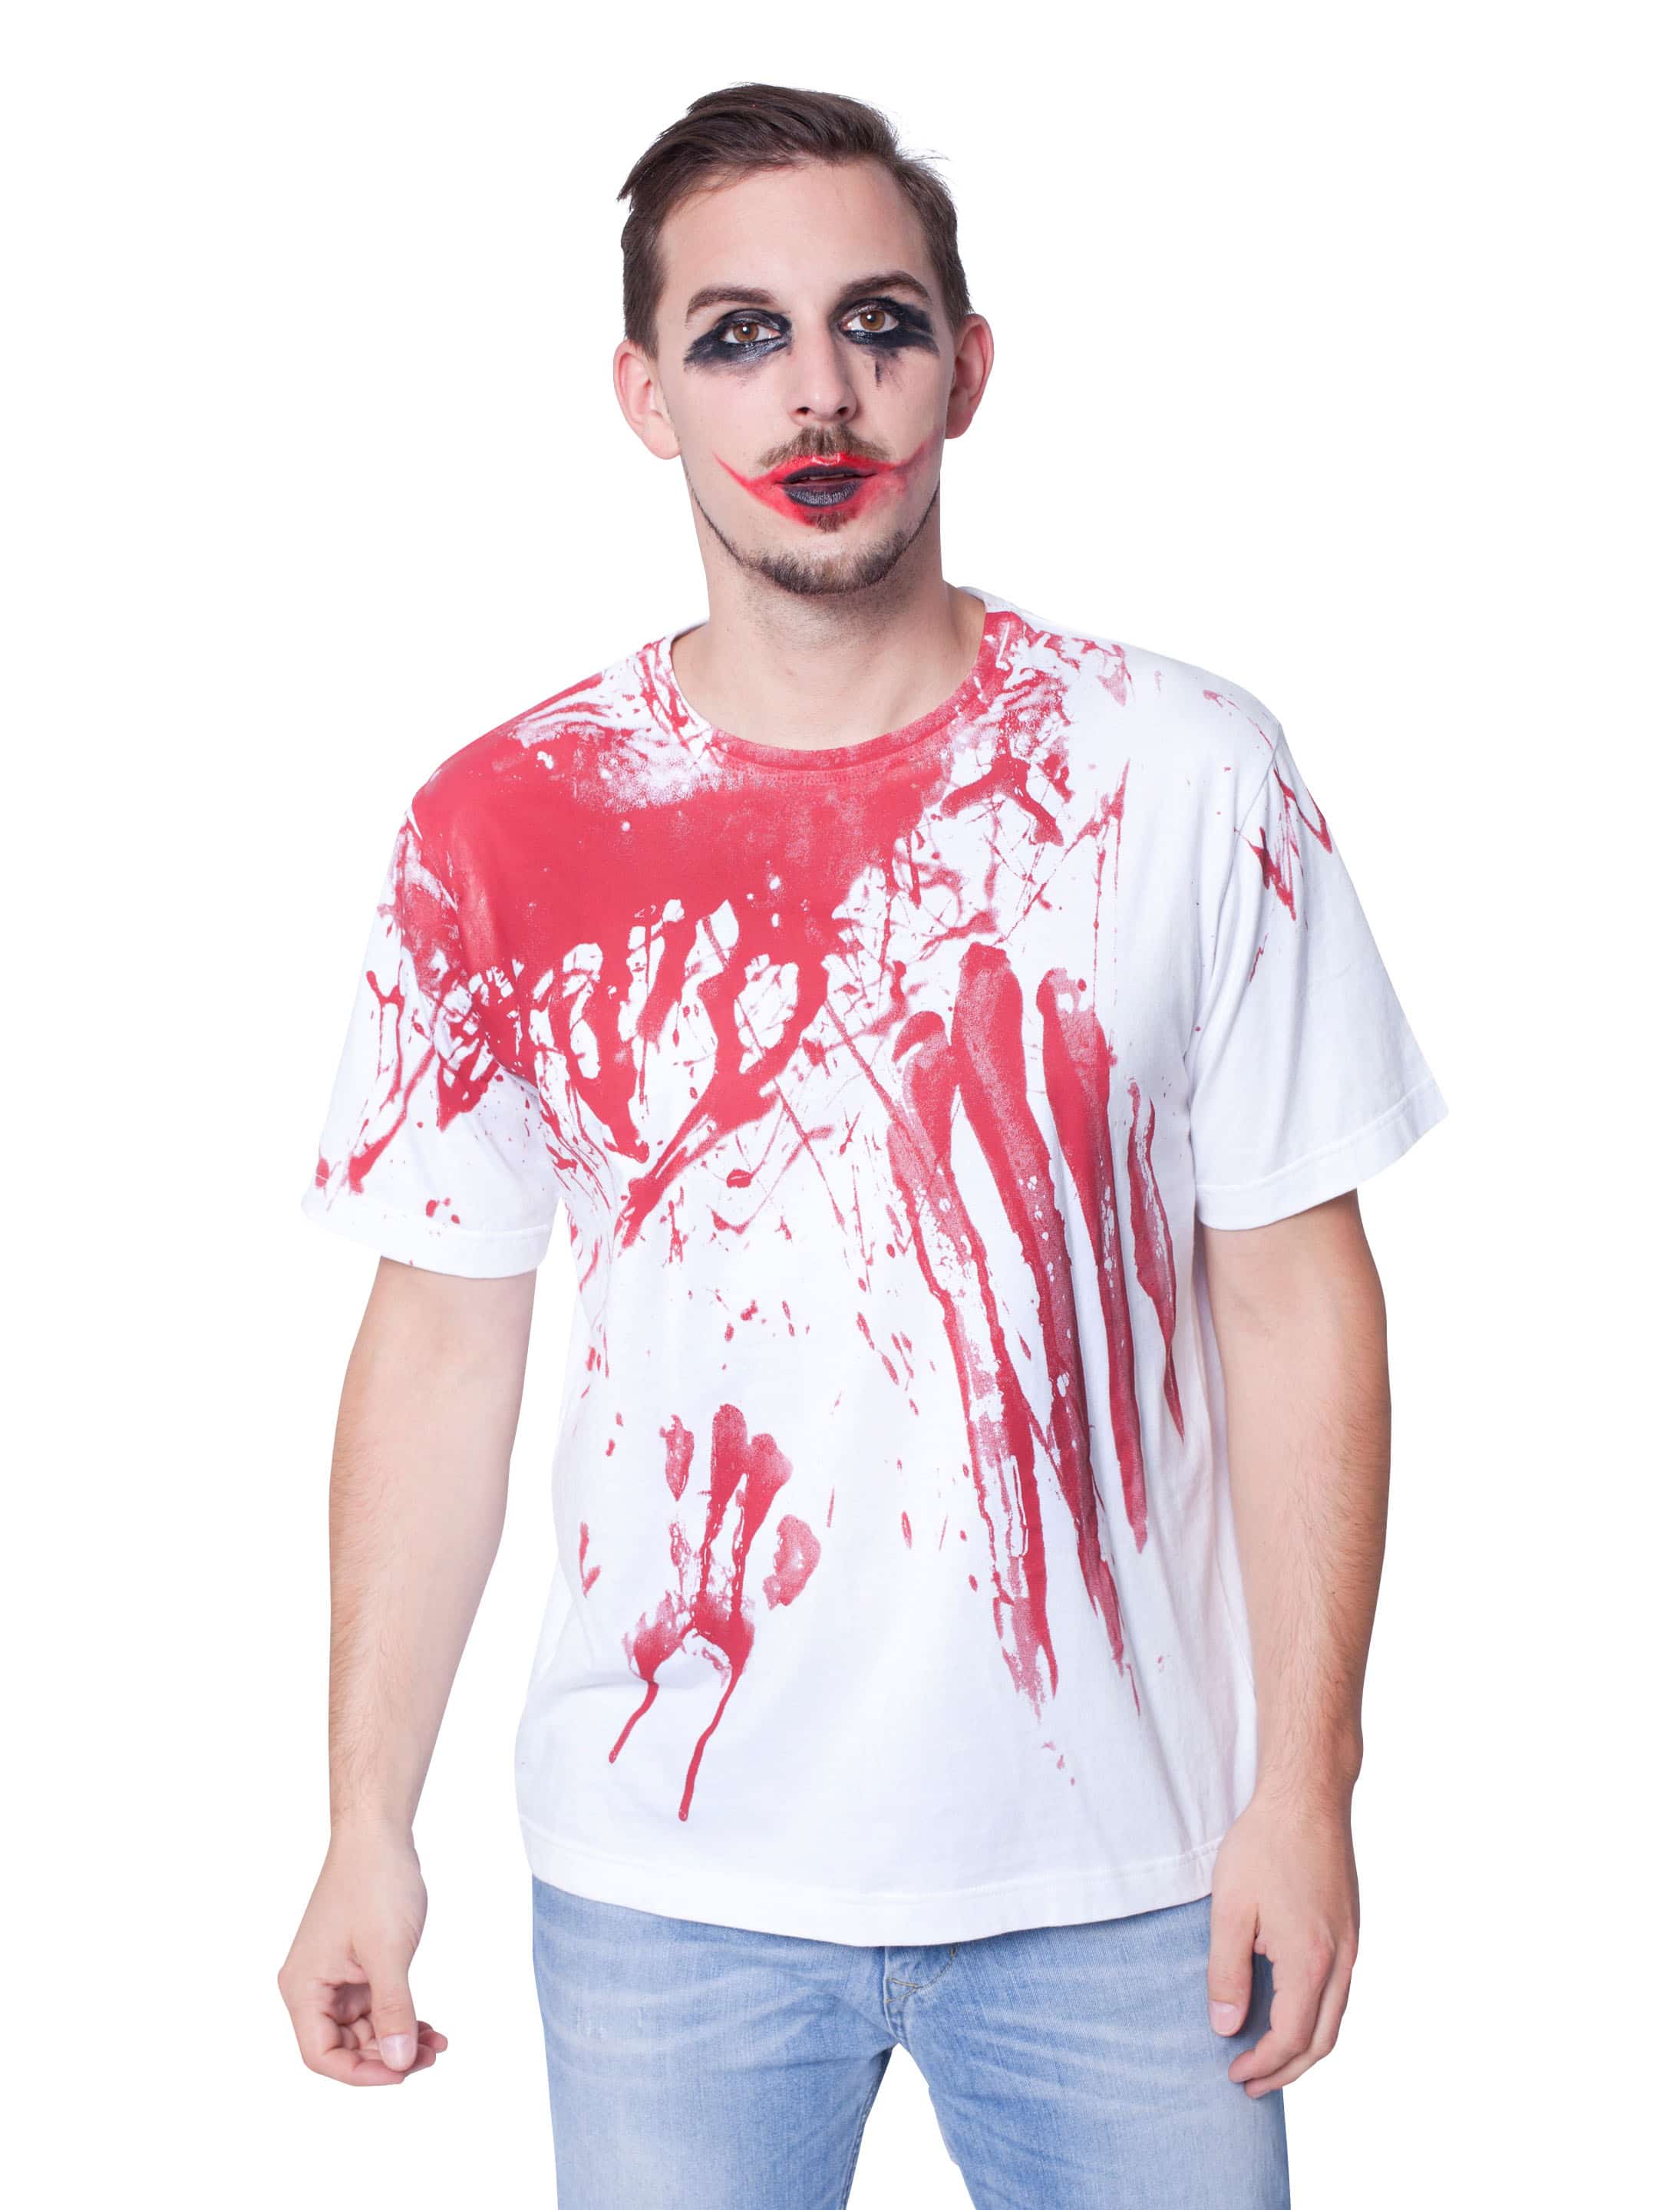 T-Shirt Halloween blutig Herren rot/weiß 2XL